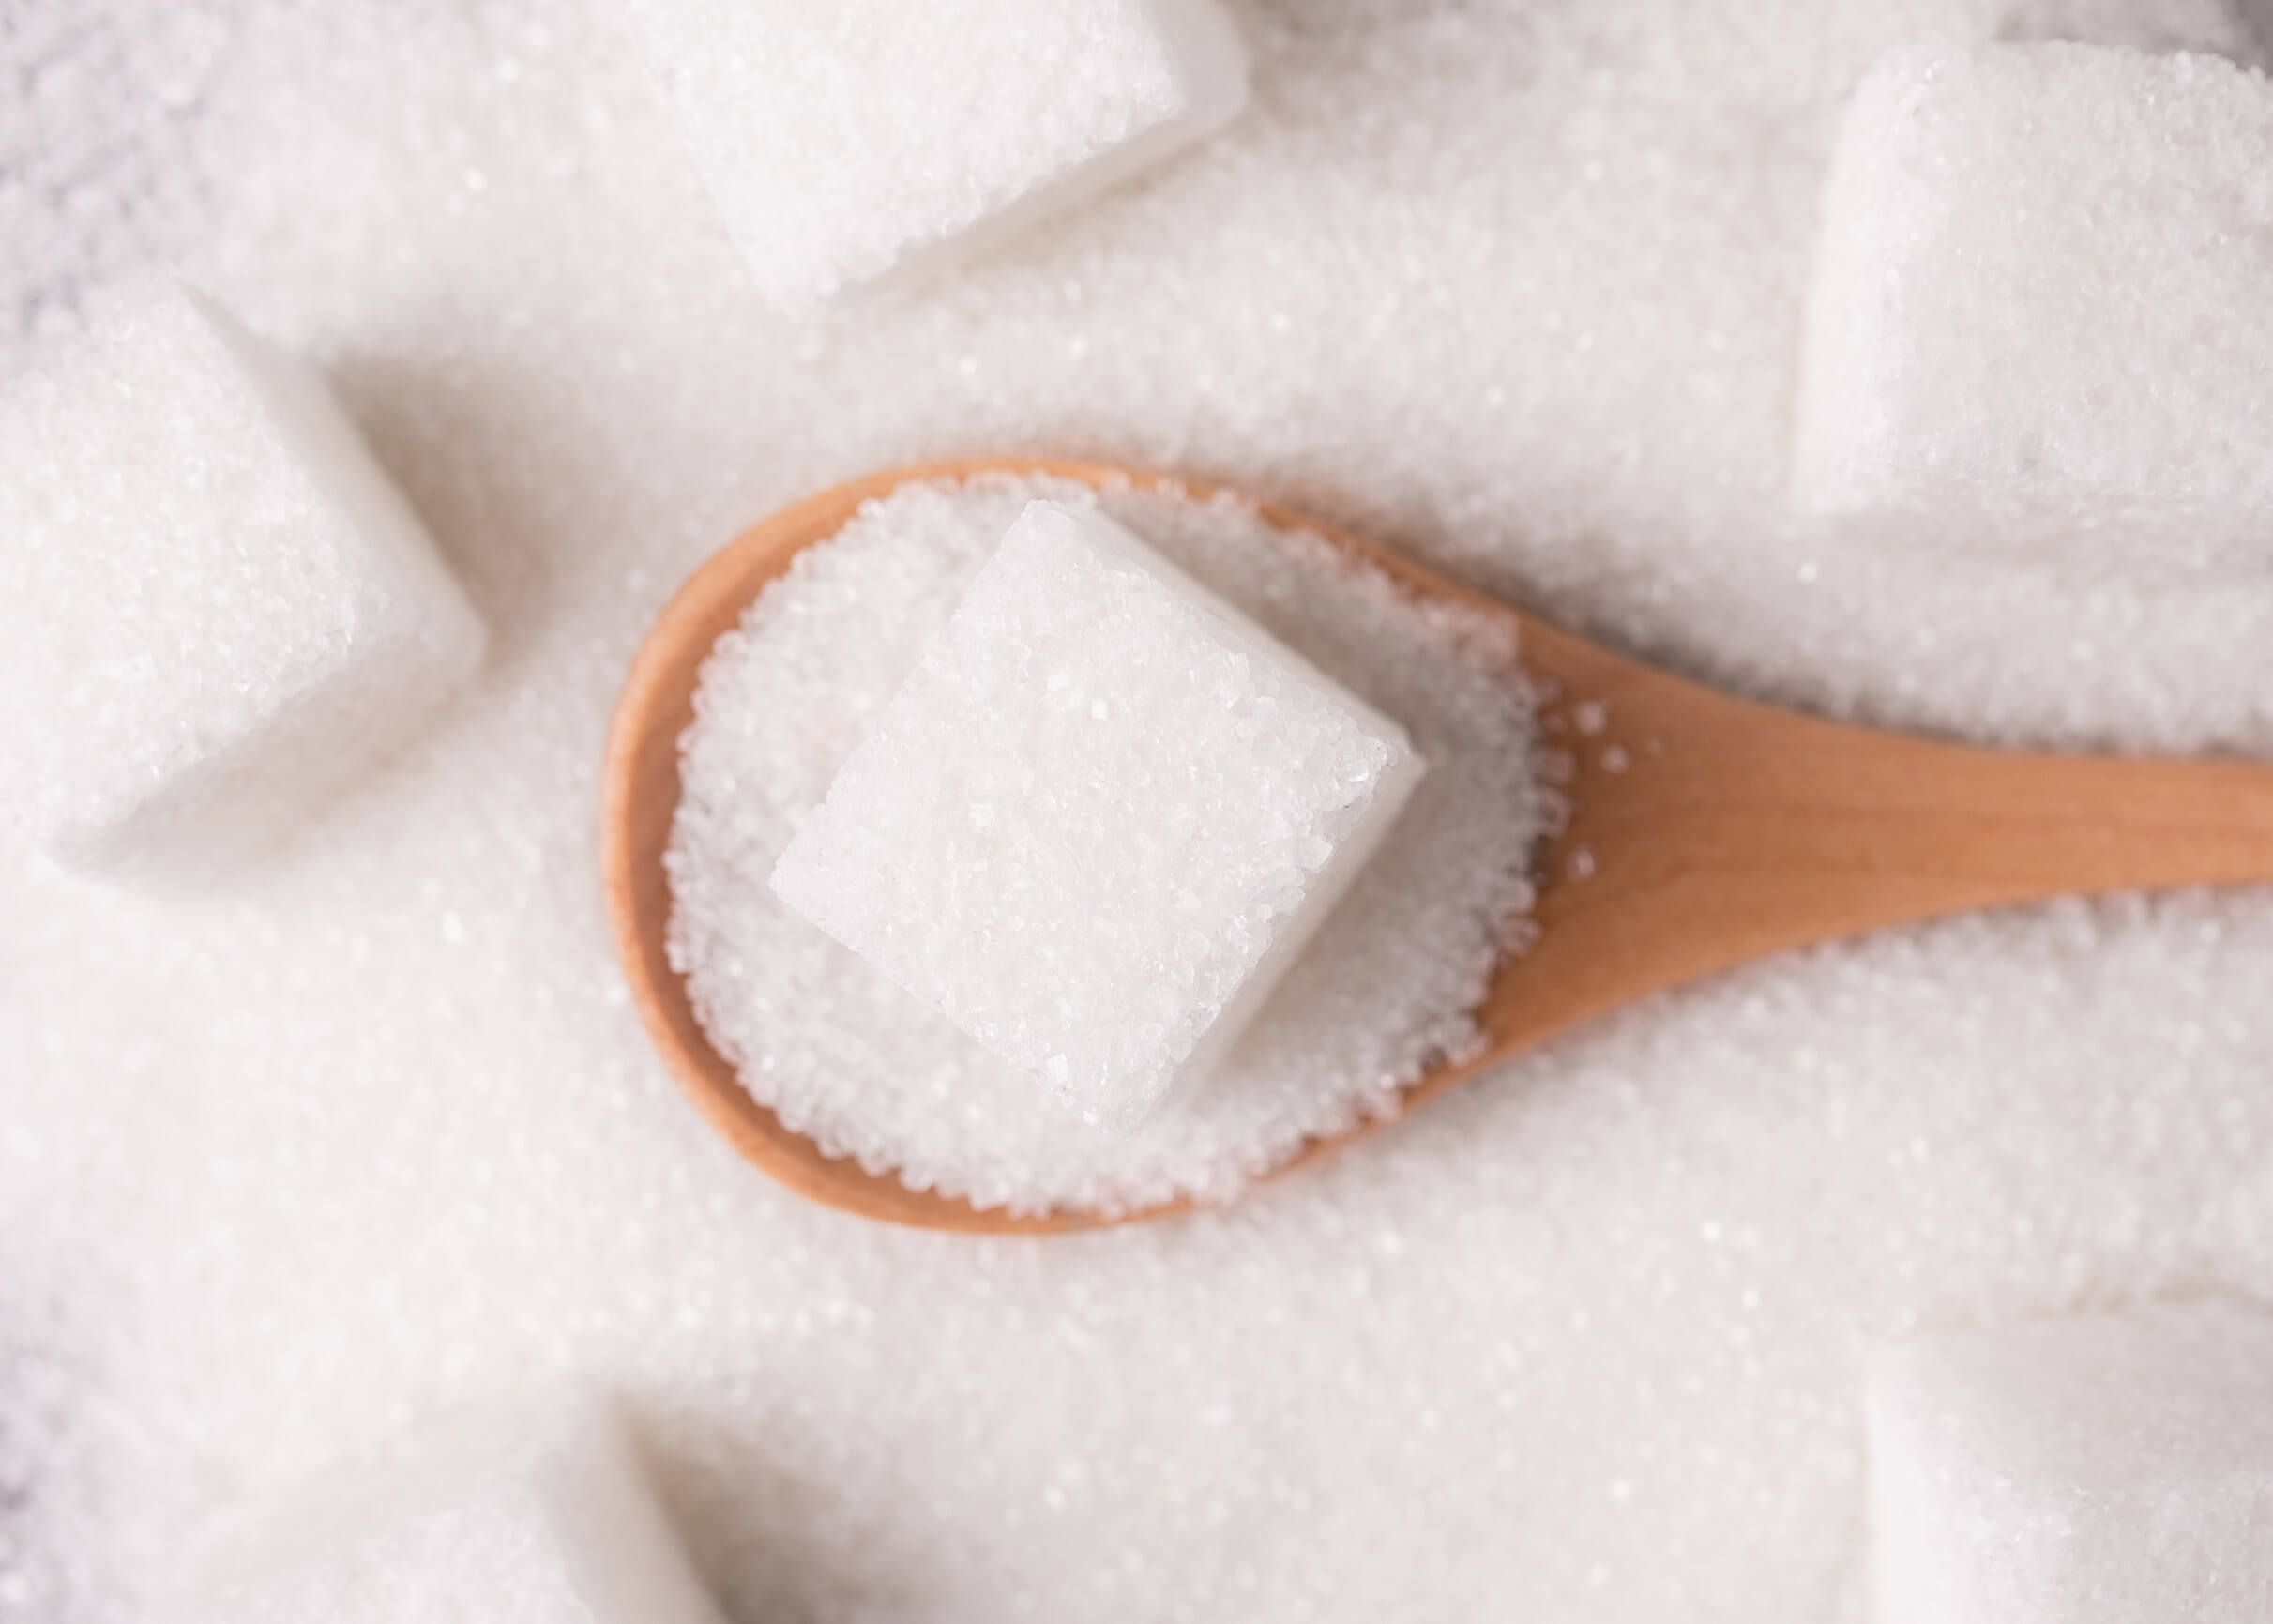 Fehler bei der Zubereitung von Smoothies - Zuckerzusatz